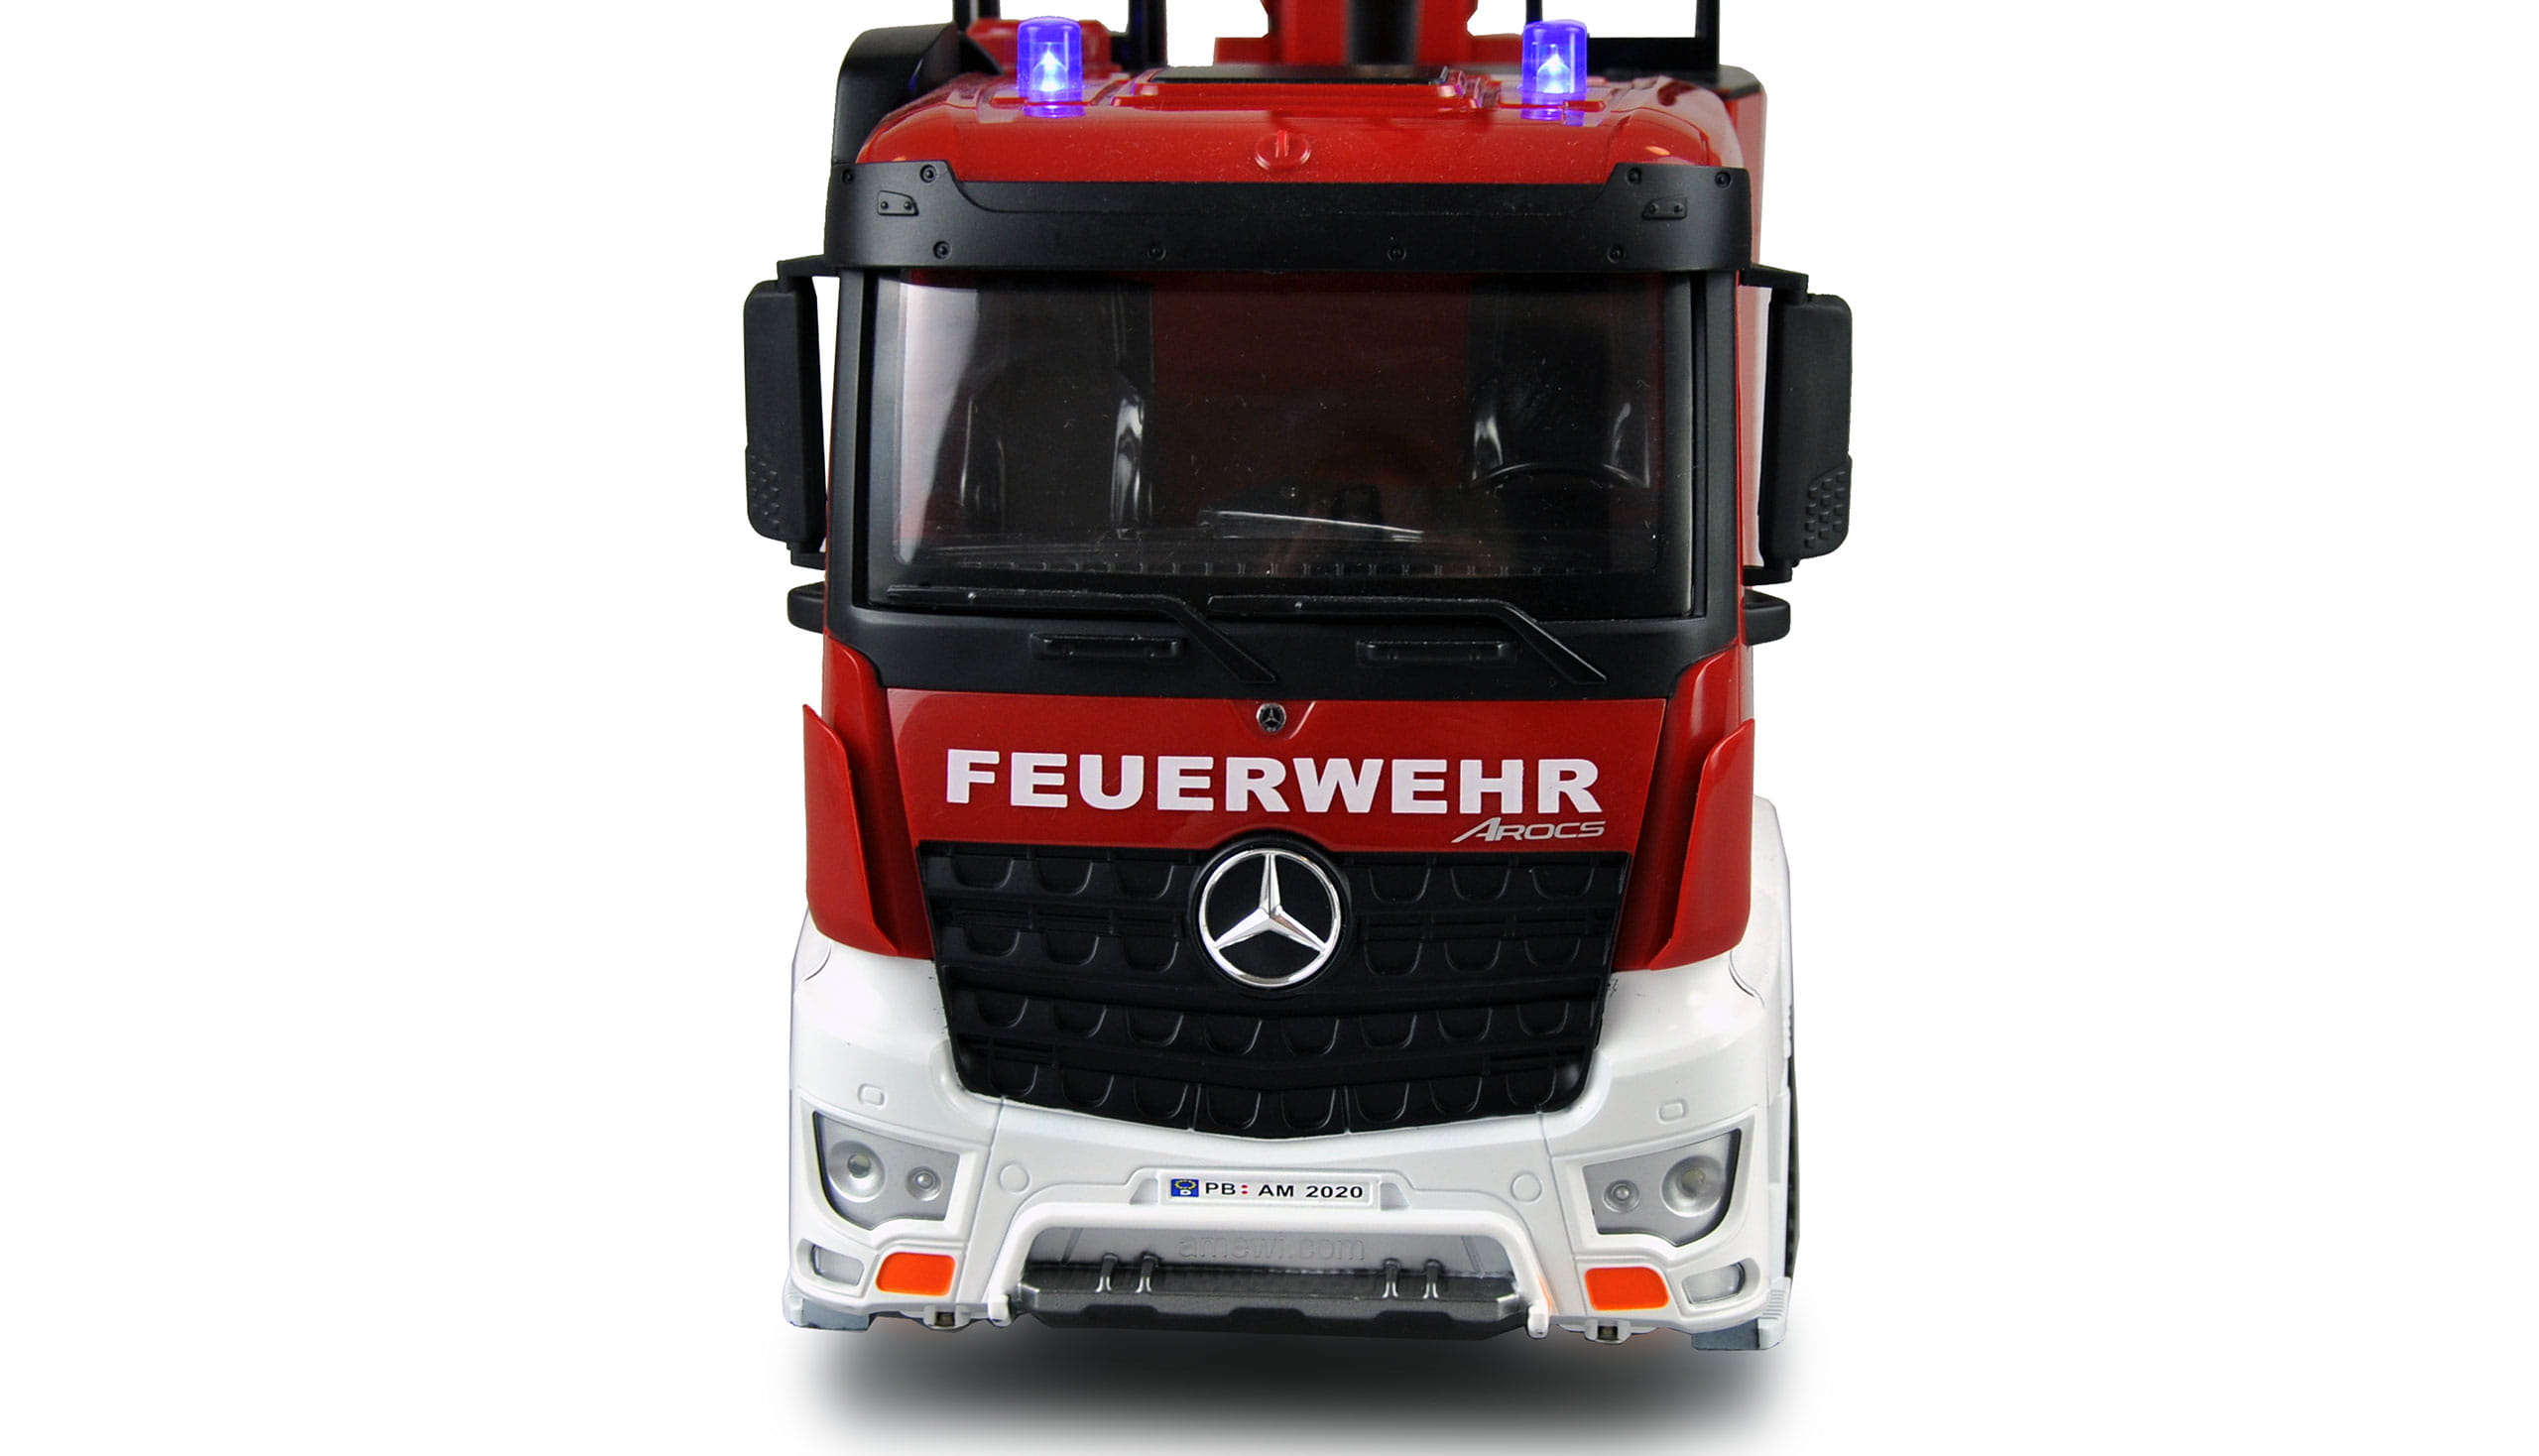 Amewi RC Mercedes Benz Feuerwehr Drehleiterfahrzeug 1:18 RTR